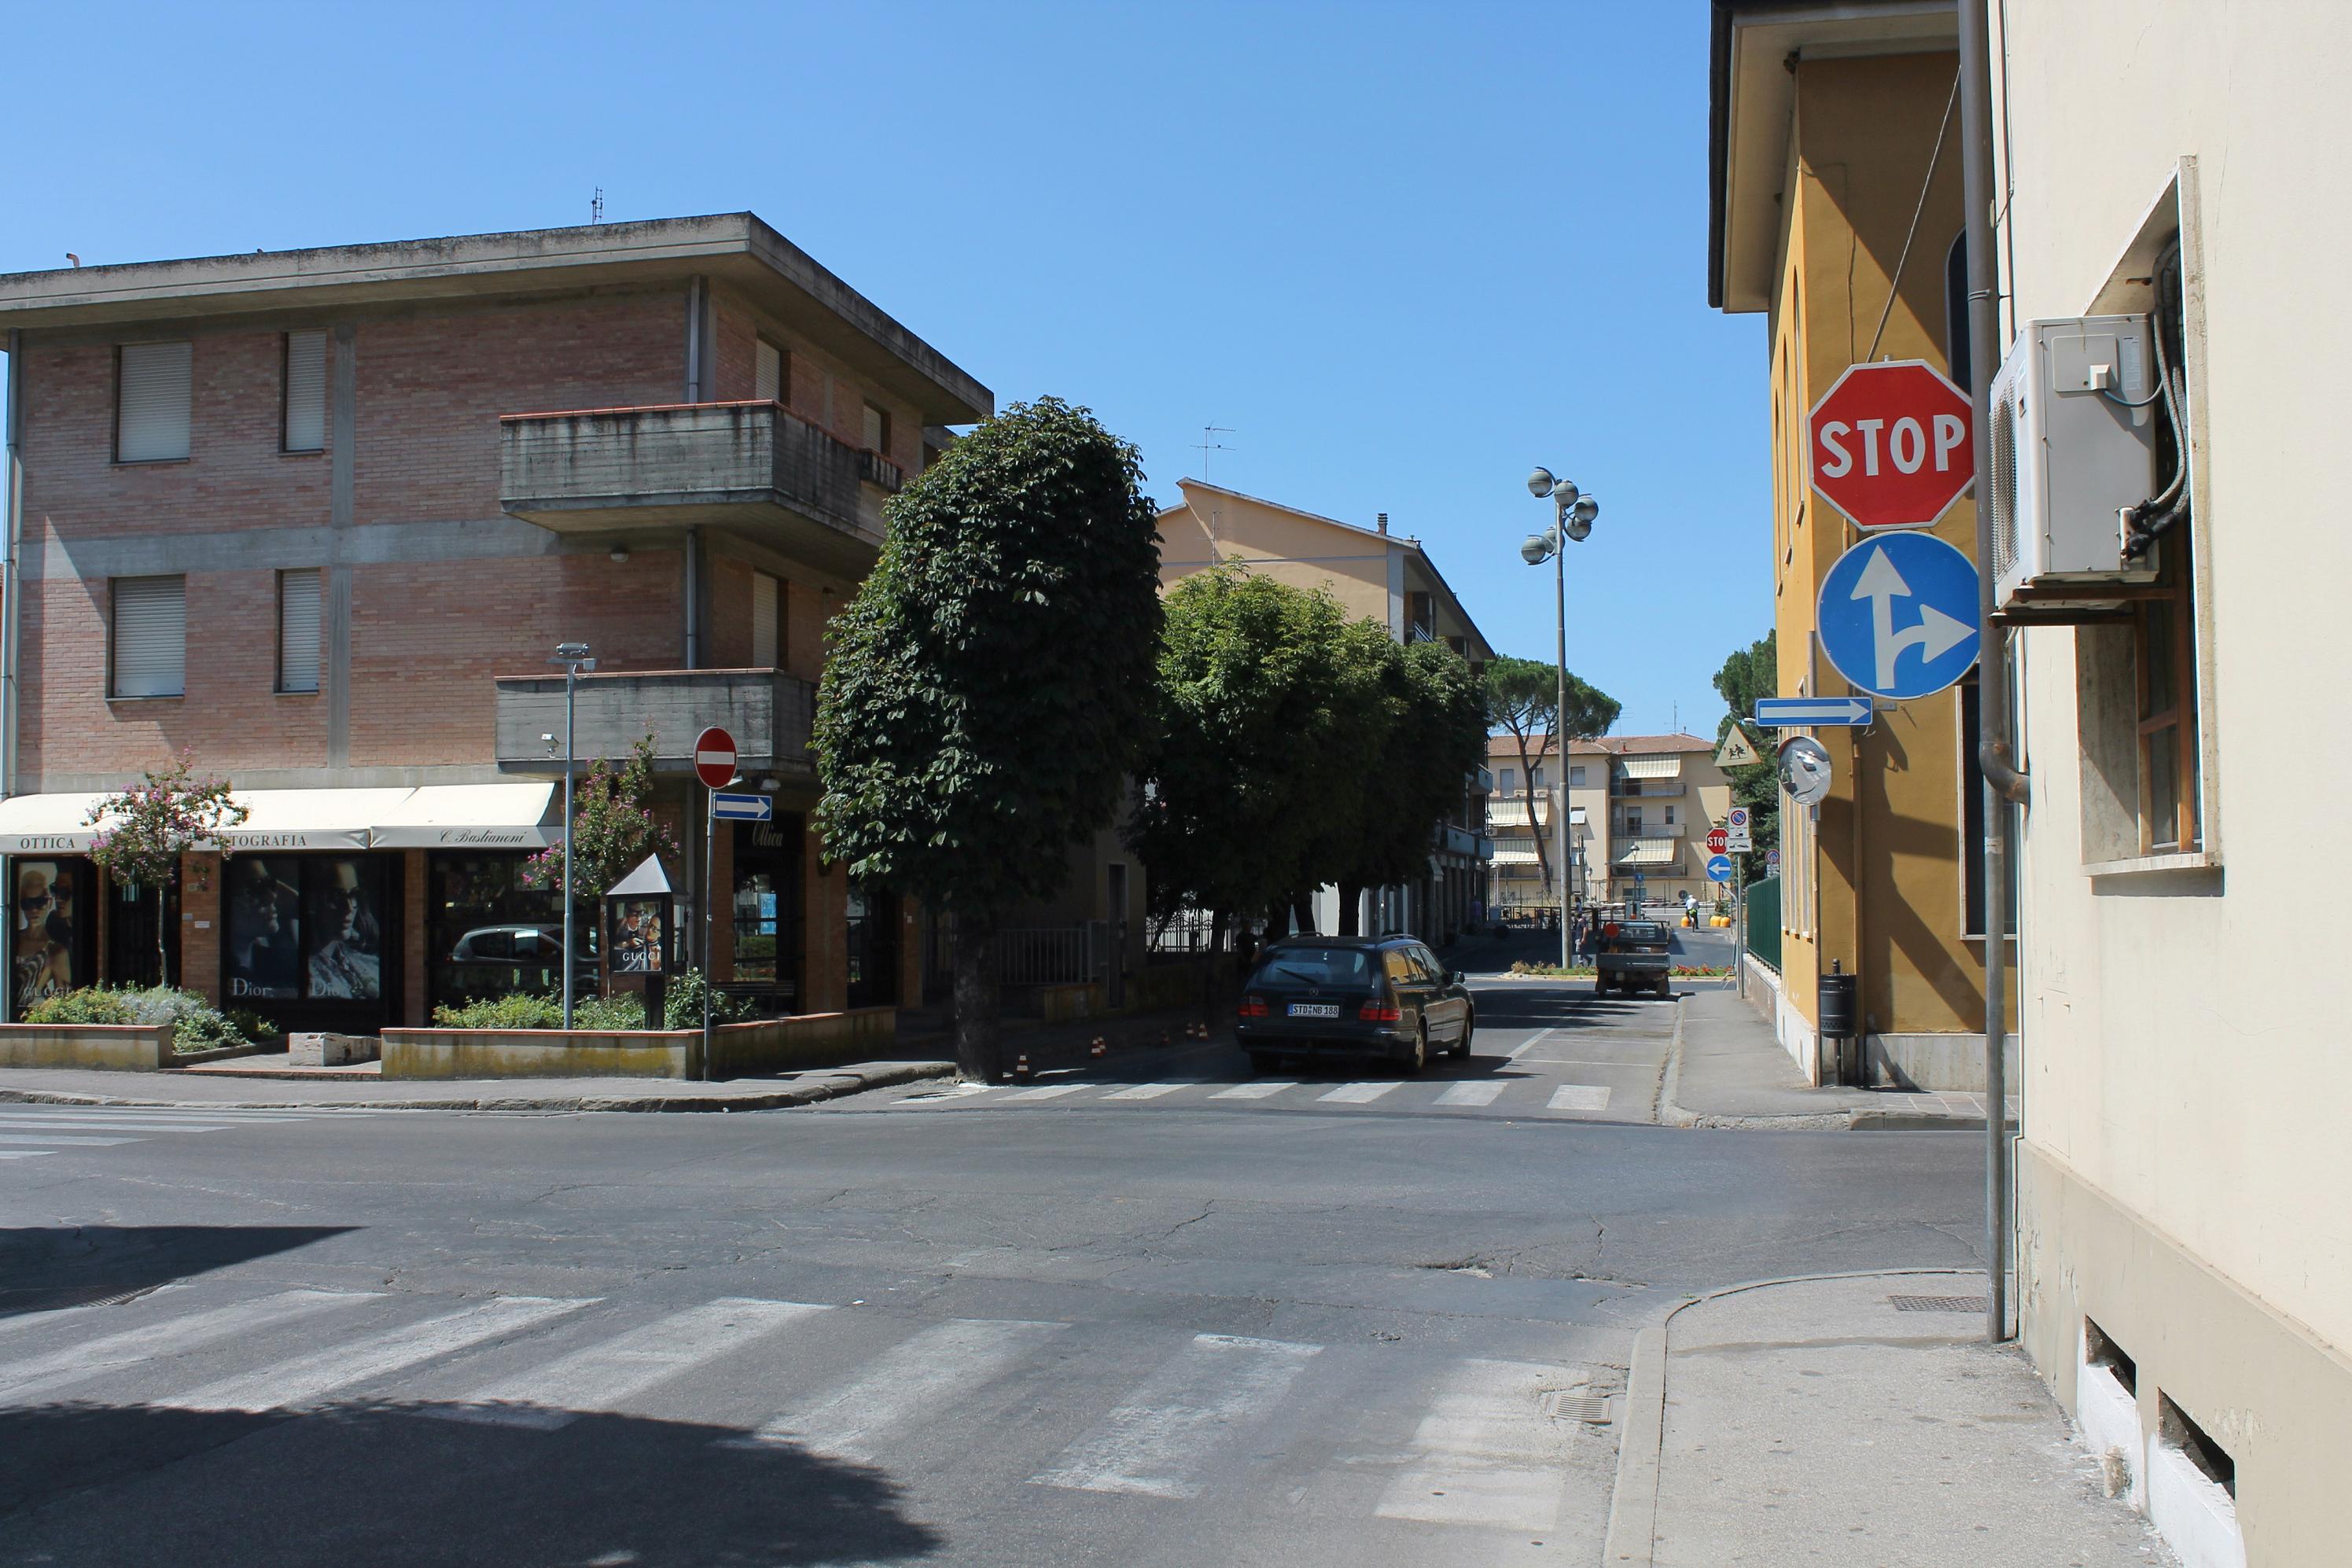 Via Trieste incrocio via Mazzini e sul fondo incrocio viale Matteotti - inversione senso di marcia